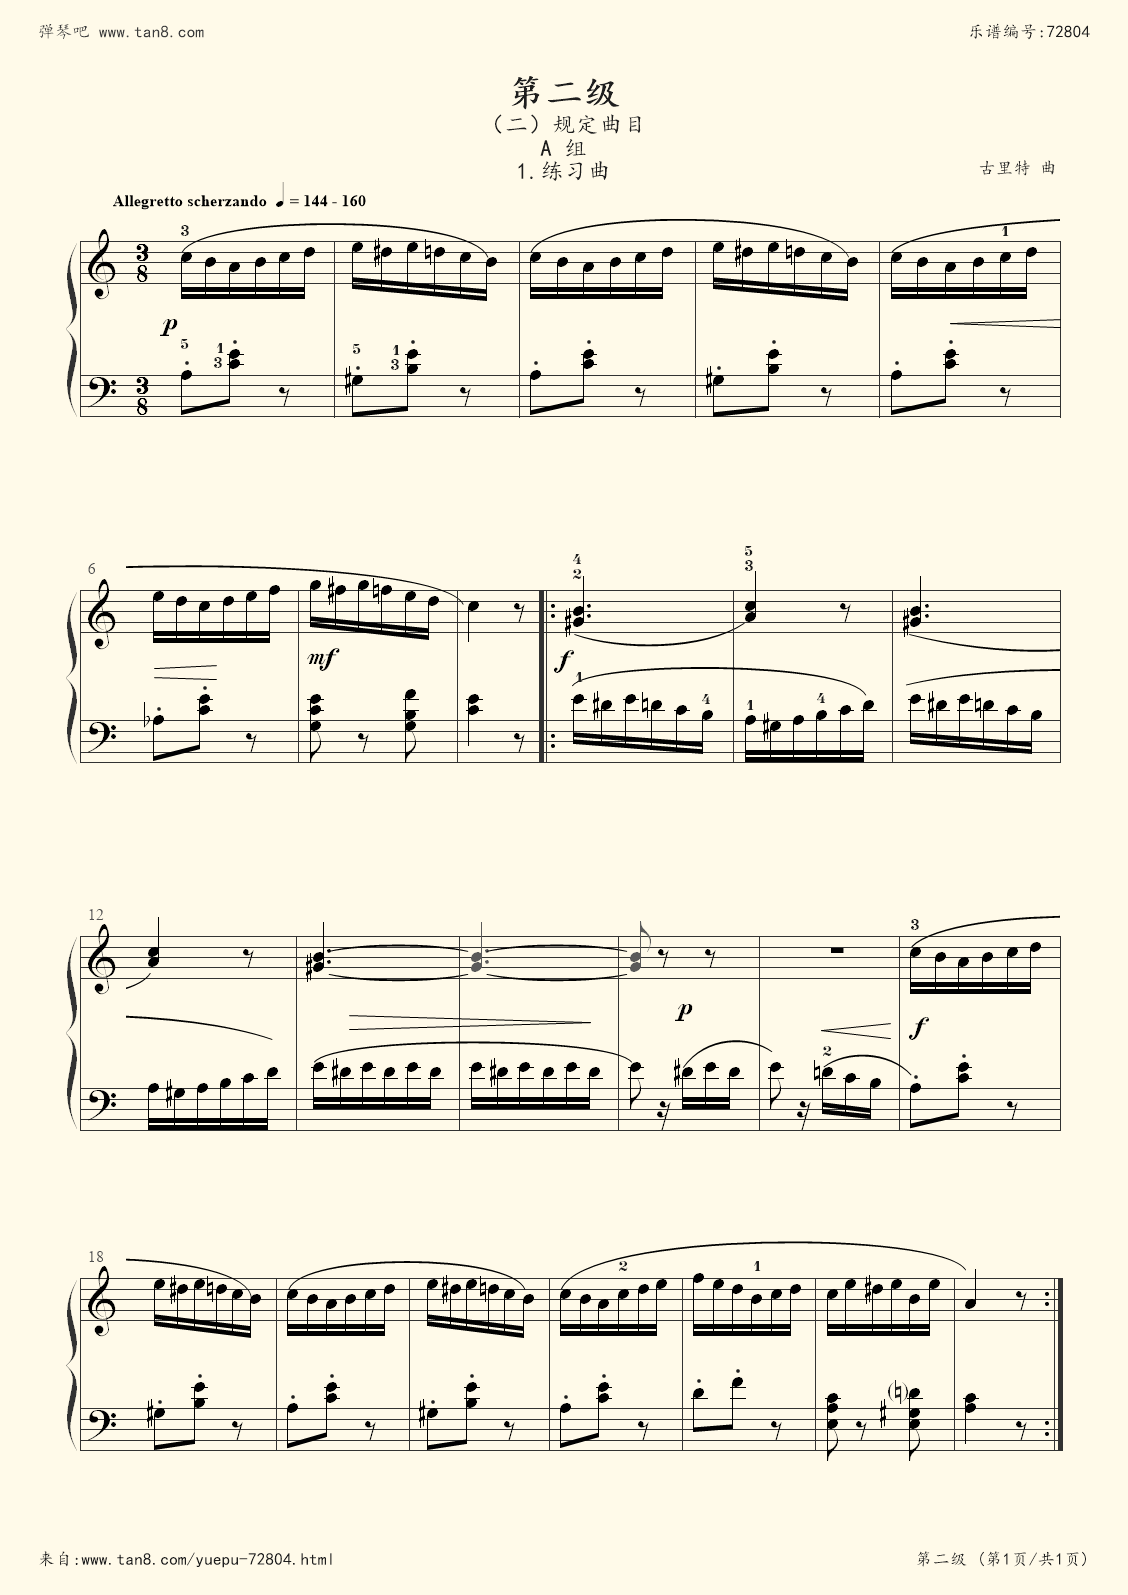 二级钢琴考级曲目b组1(中国音乐学院钢琴二级b组考级曲目)